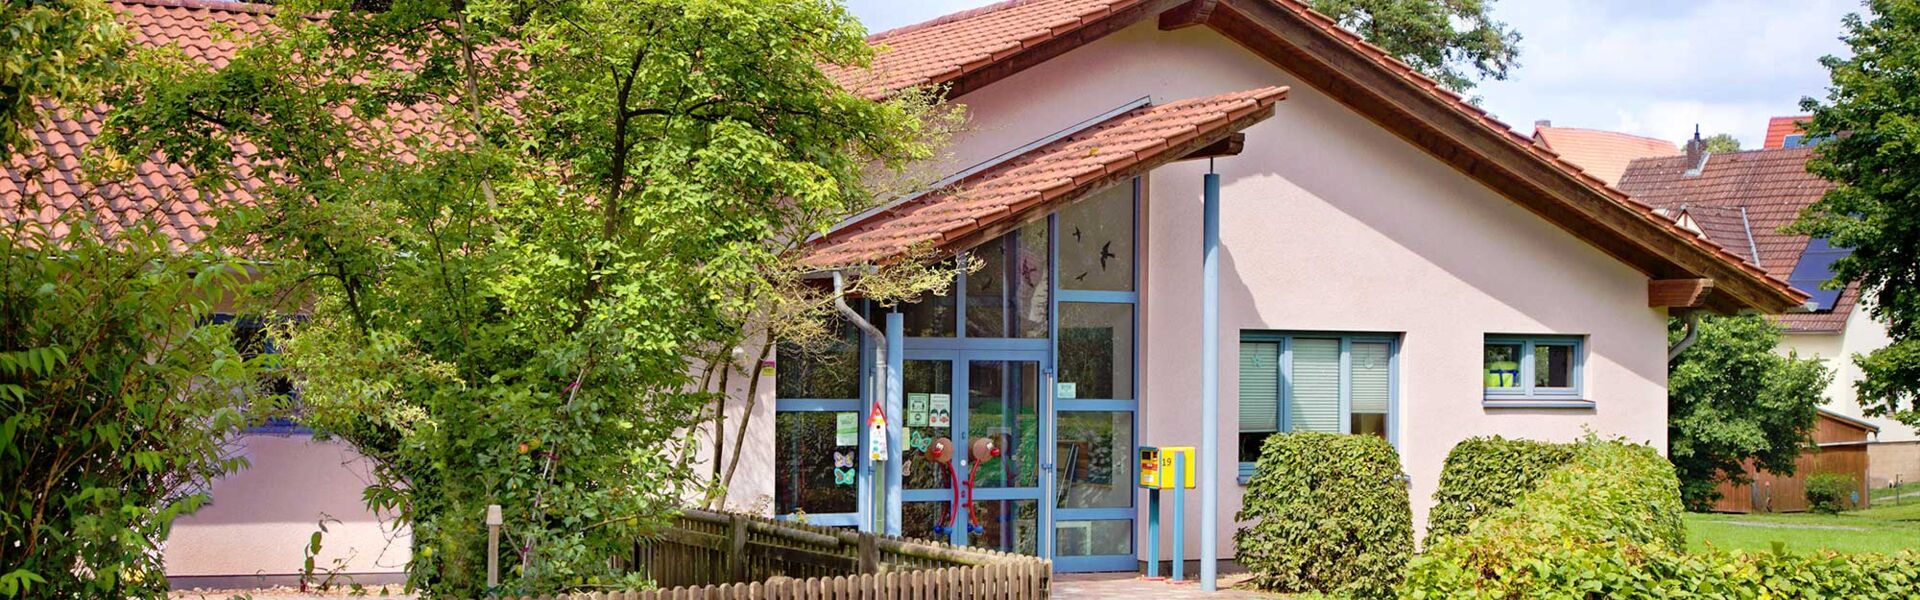 Aussenansicht der Ev. Kindertagesstätte Arche in Bad Arolsen - Mengeringhausen